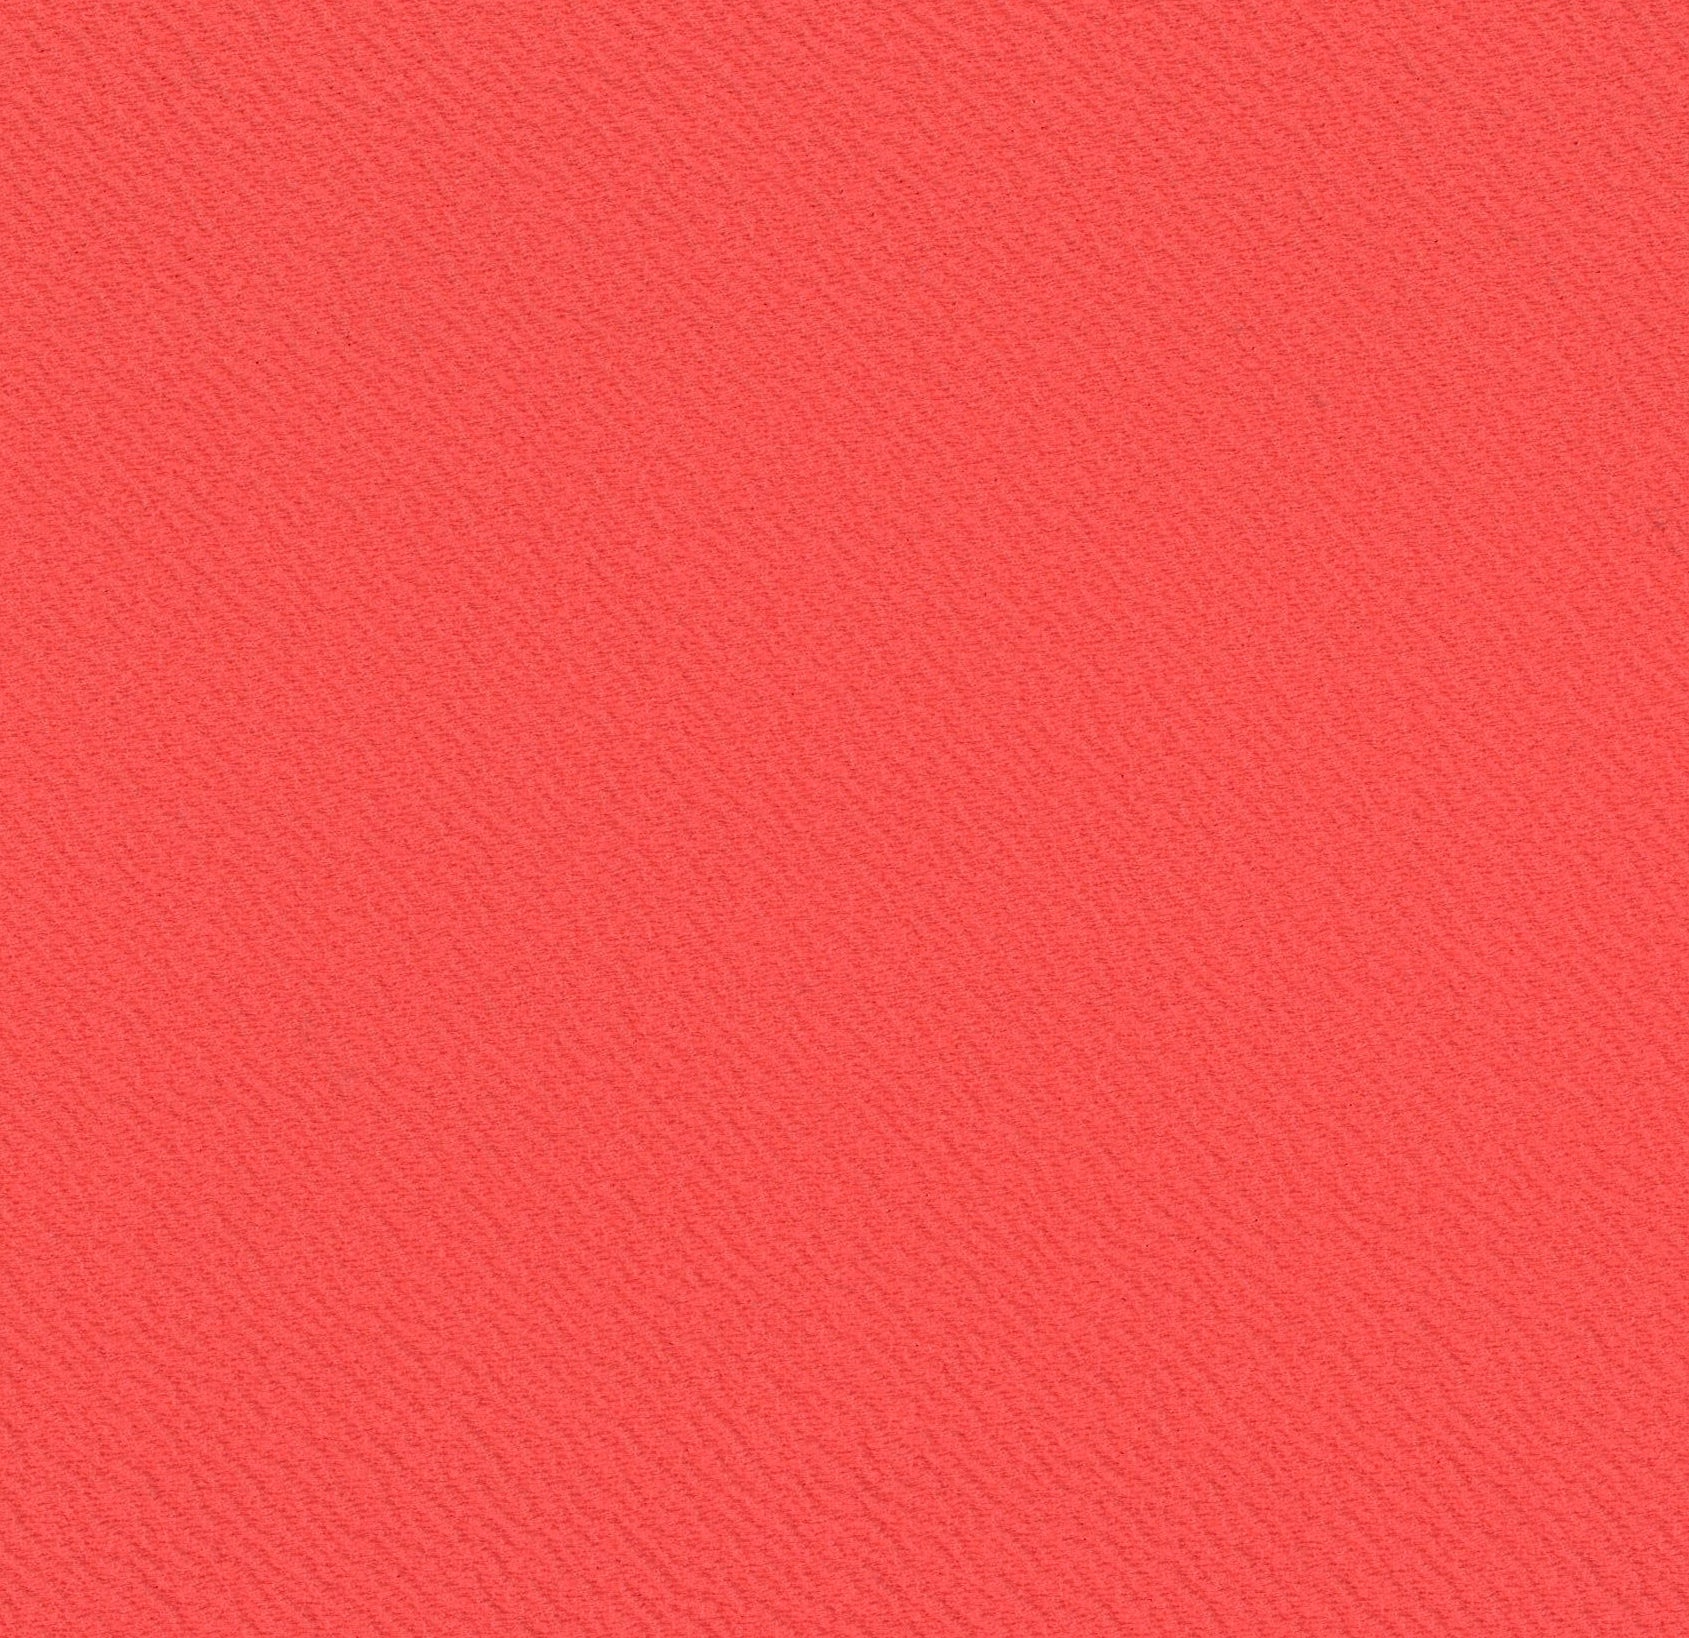 13018-09 Hot Coral Riverpool Jacquard Plain Dyed Blend 260g/yd 58" blend jacquard knit orange plain dyed polyester spandex Solid Color, Jacquard - knit fabric - woven fabric - fabric company - fabric wholesale - fabric b2b - fabric factory - high quality fabric - hong kong fabric - fabric hk - acetate fabric - cotton fabric - linen fabric - metallic fabric - nylon fabric - polyester fabric - spandex fabric - chun wing hing - cwh hk - fabric worldwide ship - 針織布 - 梳織布 - 布料公司- 布料批發 - 香港布料 - 秦榮興